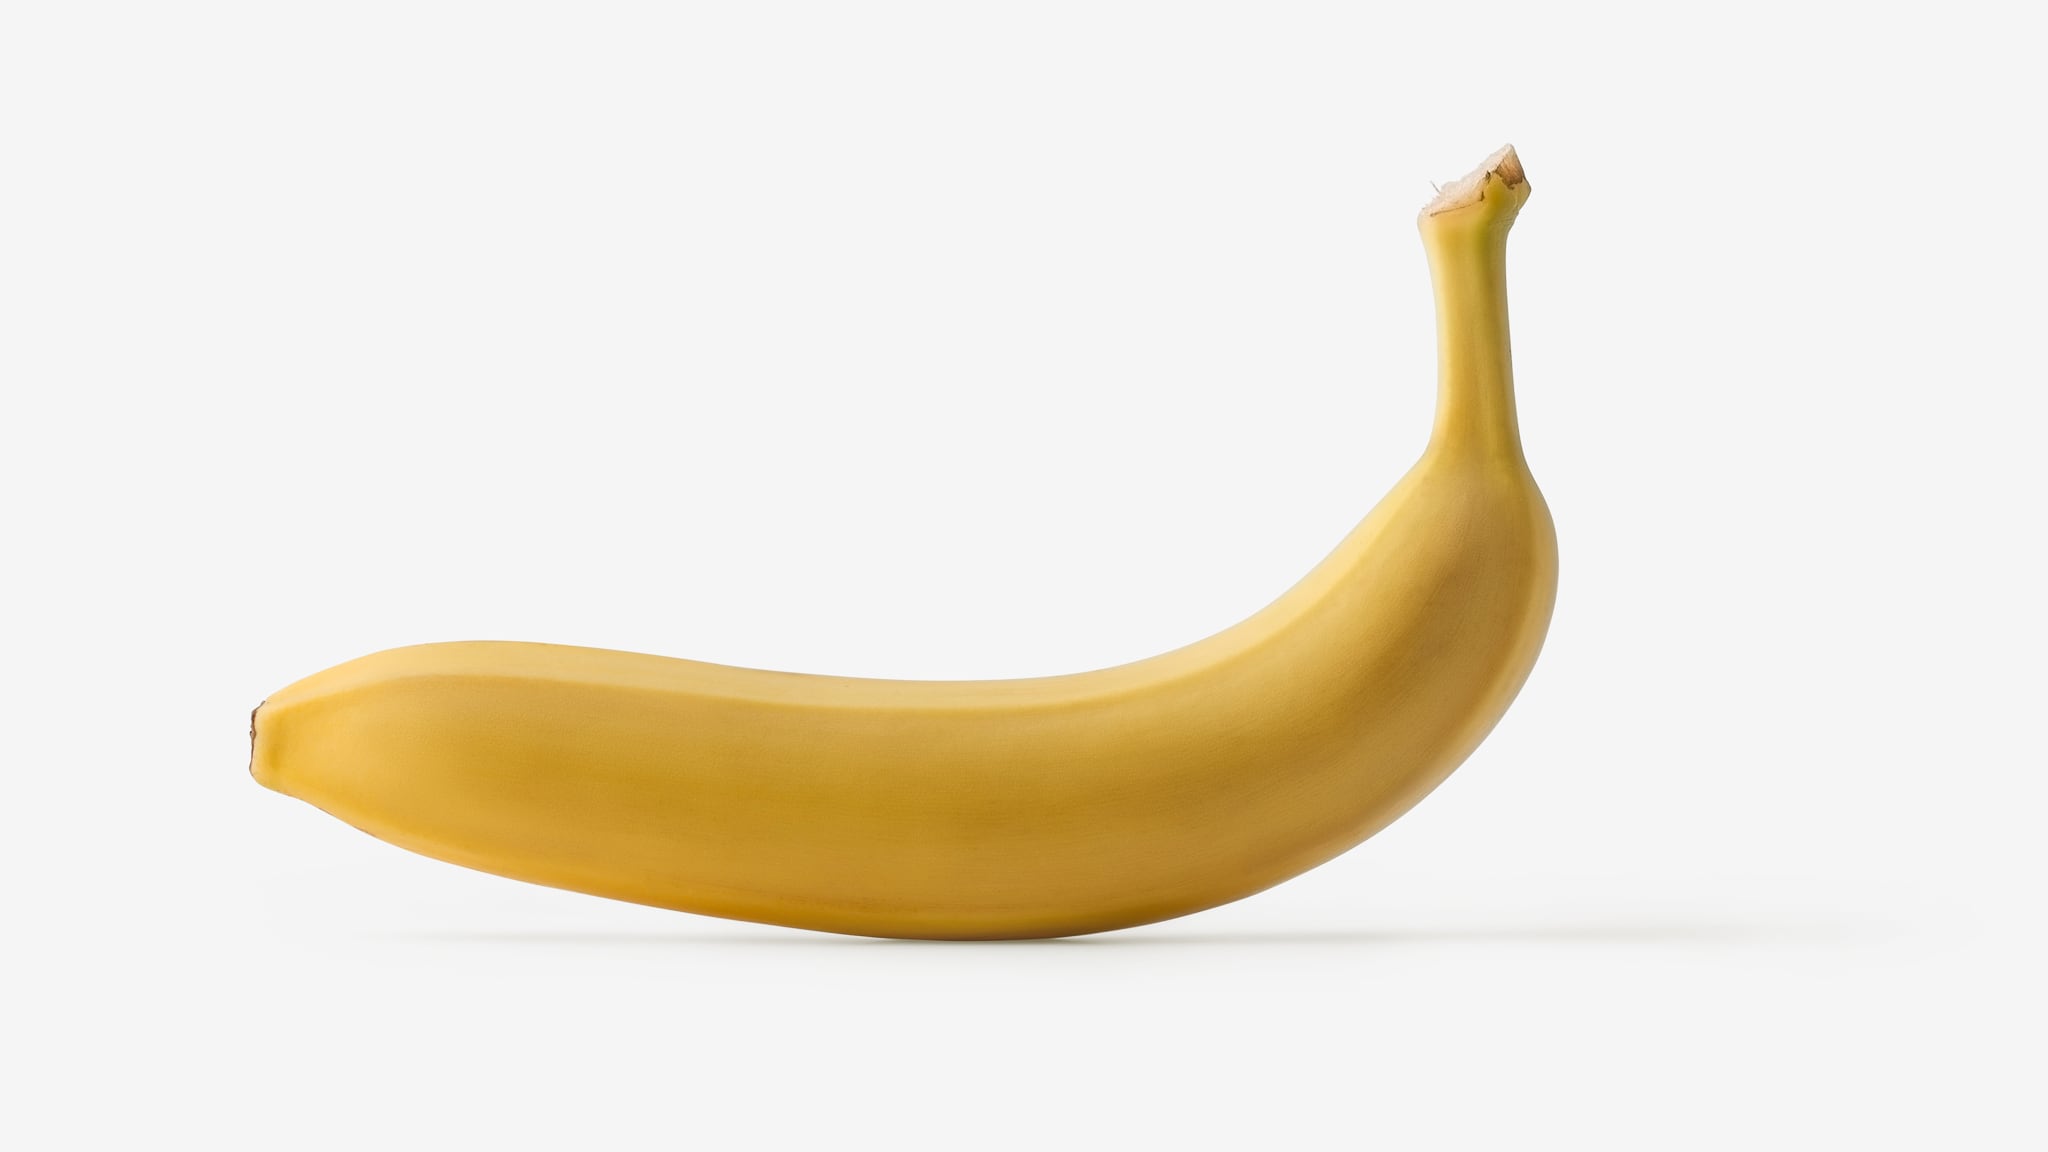 Banana PSD isolated image